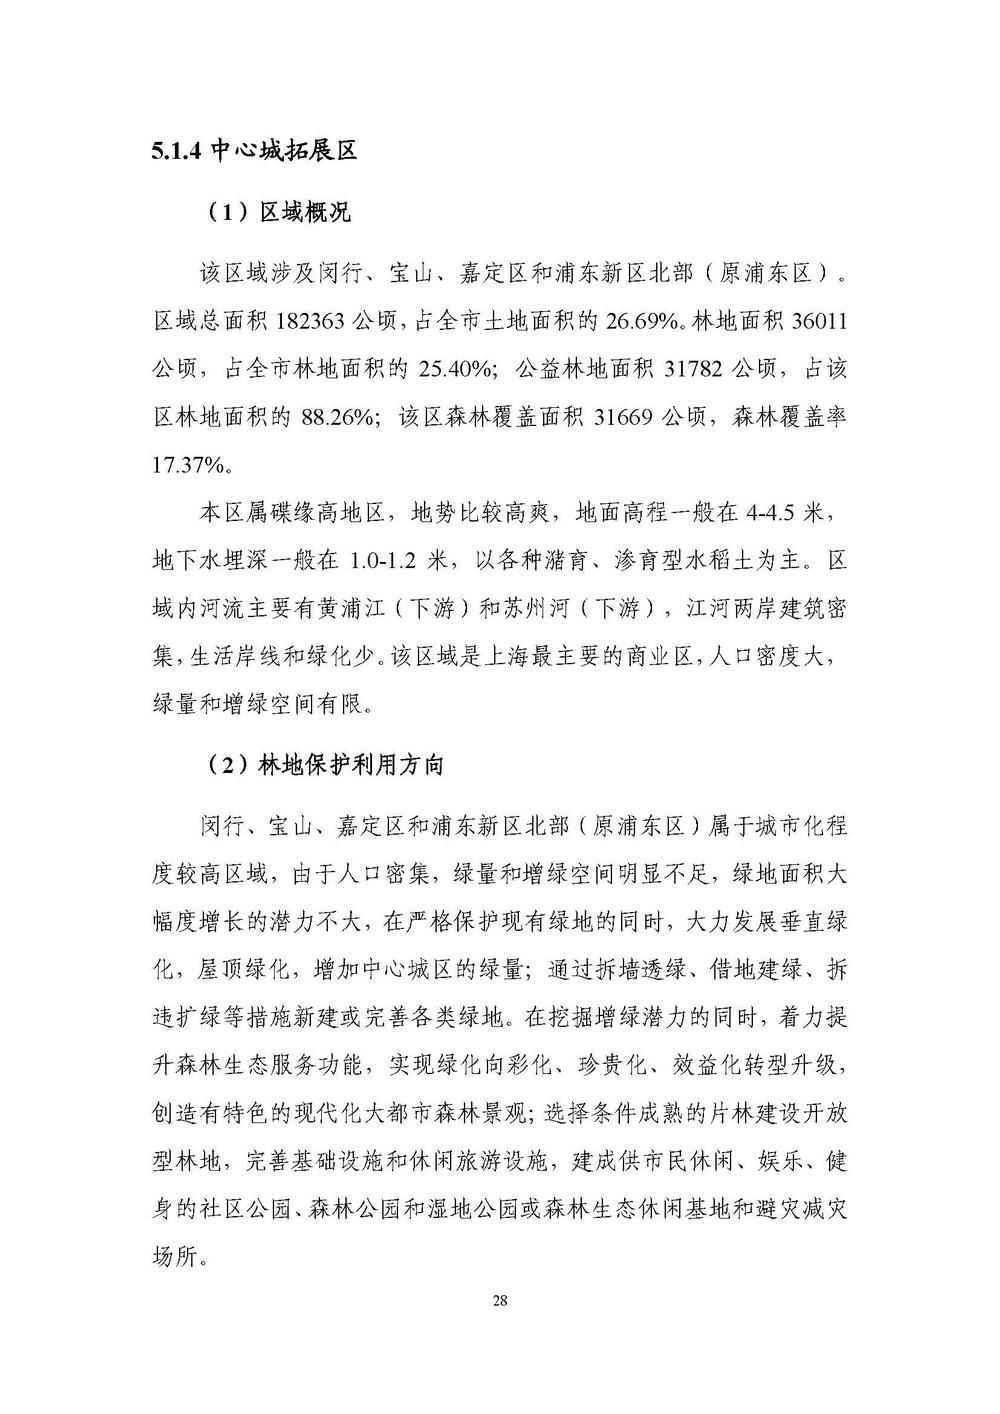 上海市森林和林地保护利用规划文本 公开稿 附图_页面_31.jpg